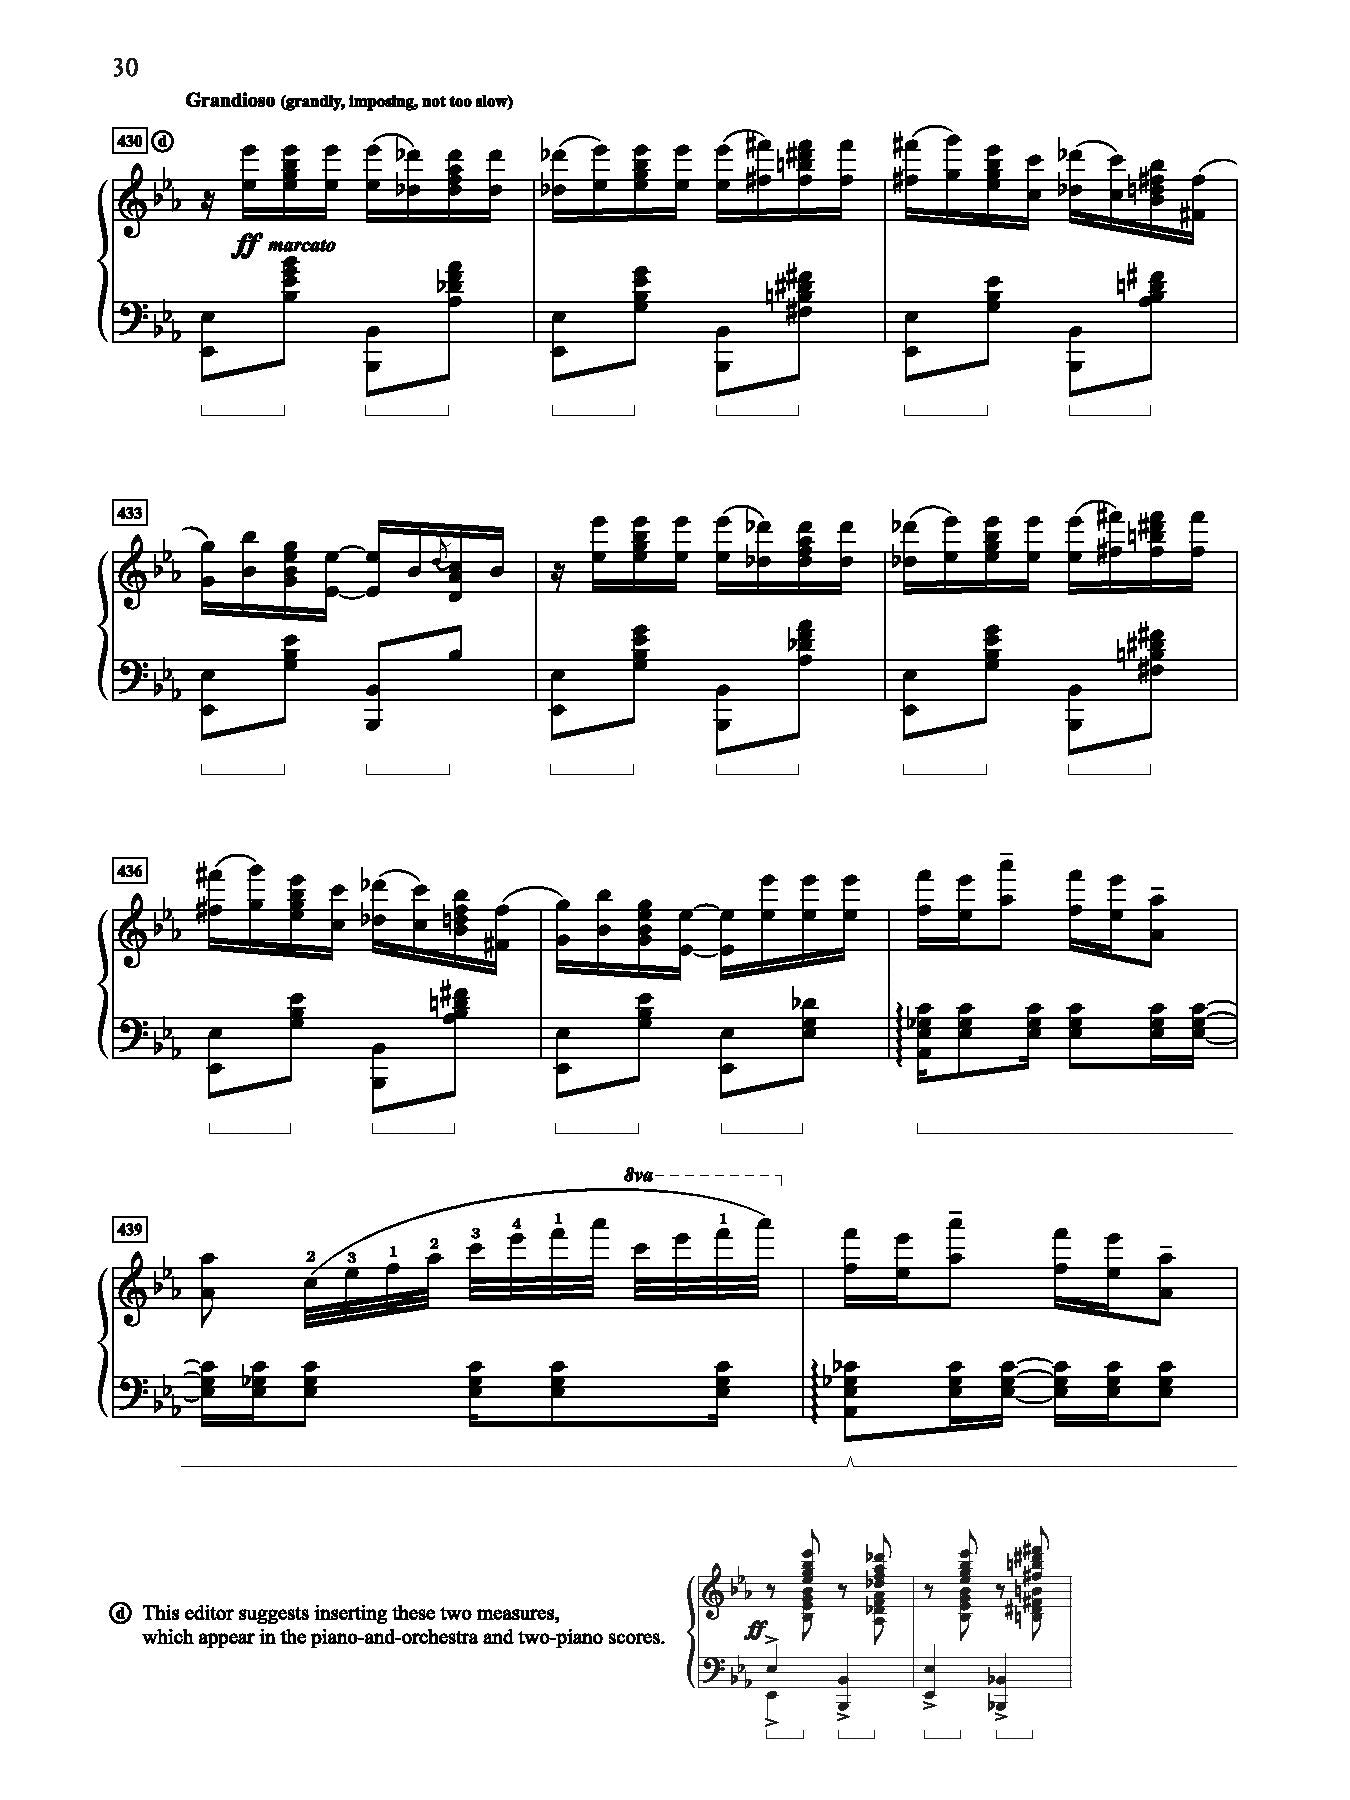 Gershwin: Rhapsody in Blue (Solo Piano Version)